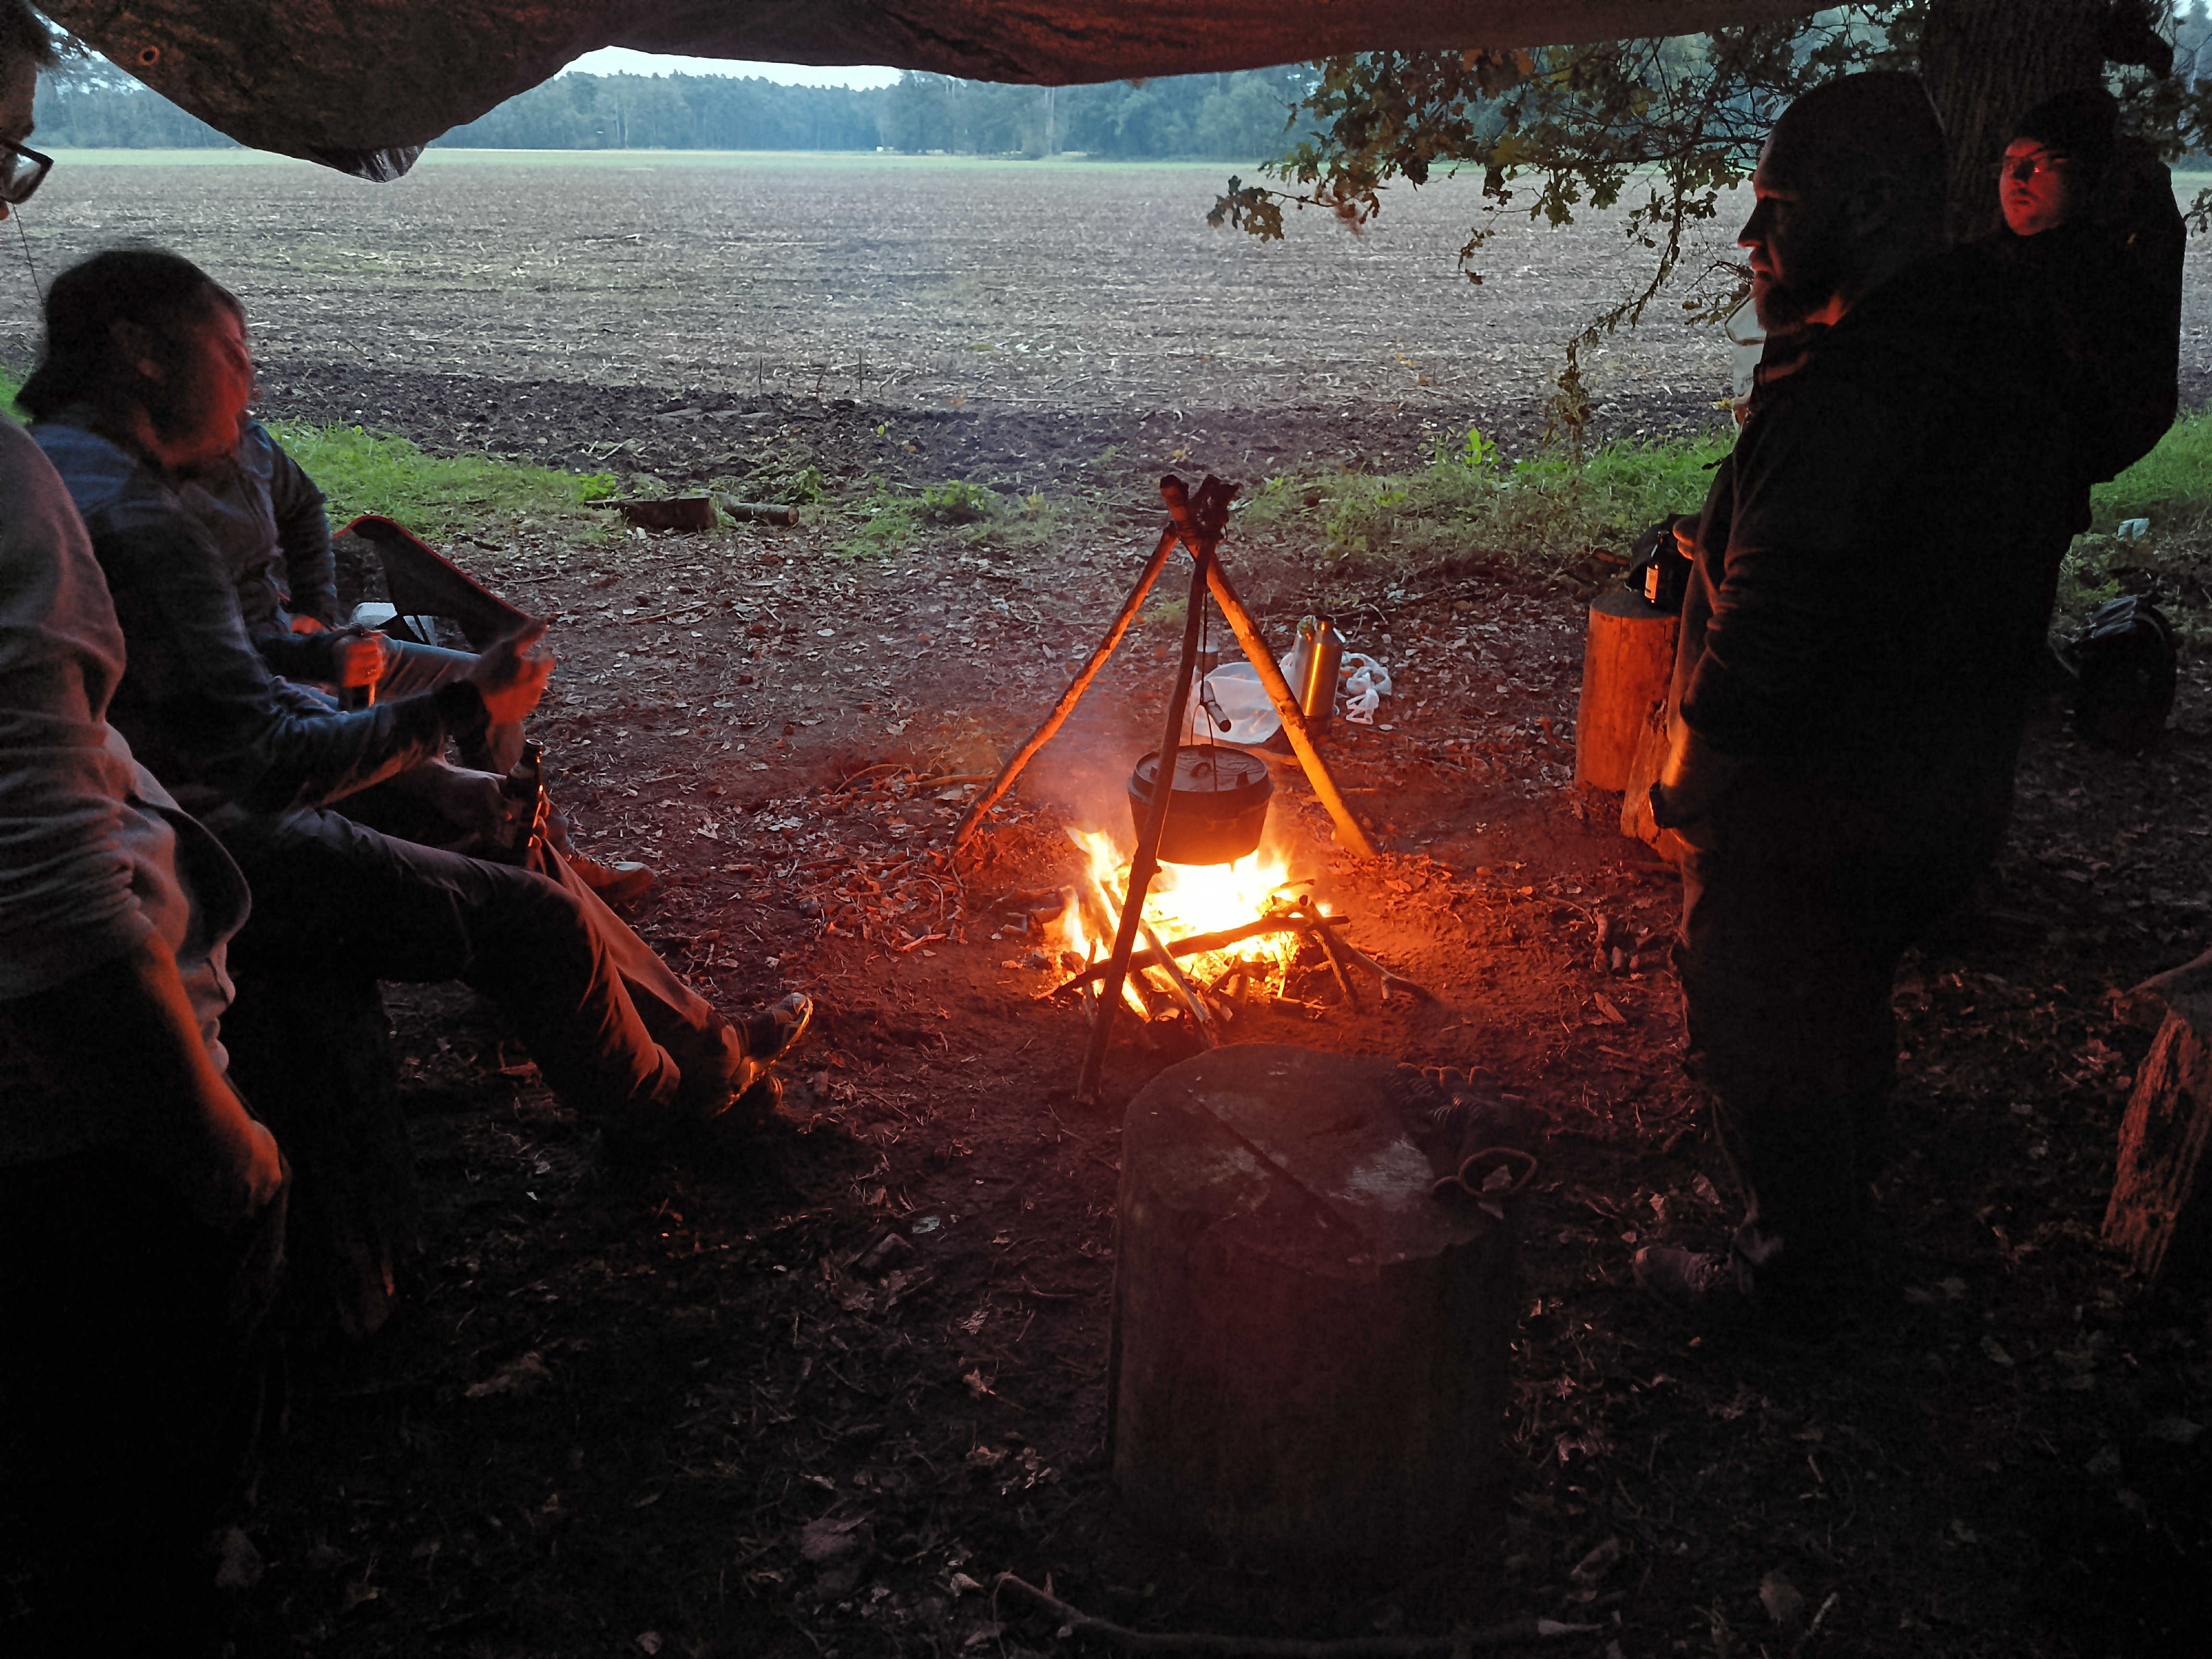 alt="Lagerplatz mit Lagerfeuer am frühen Abend. Über dem Feuer hängt ein Topf im Hintergrund sieht man ein Feld."